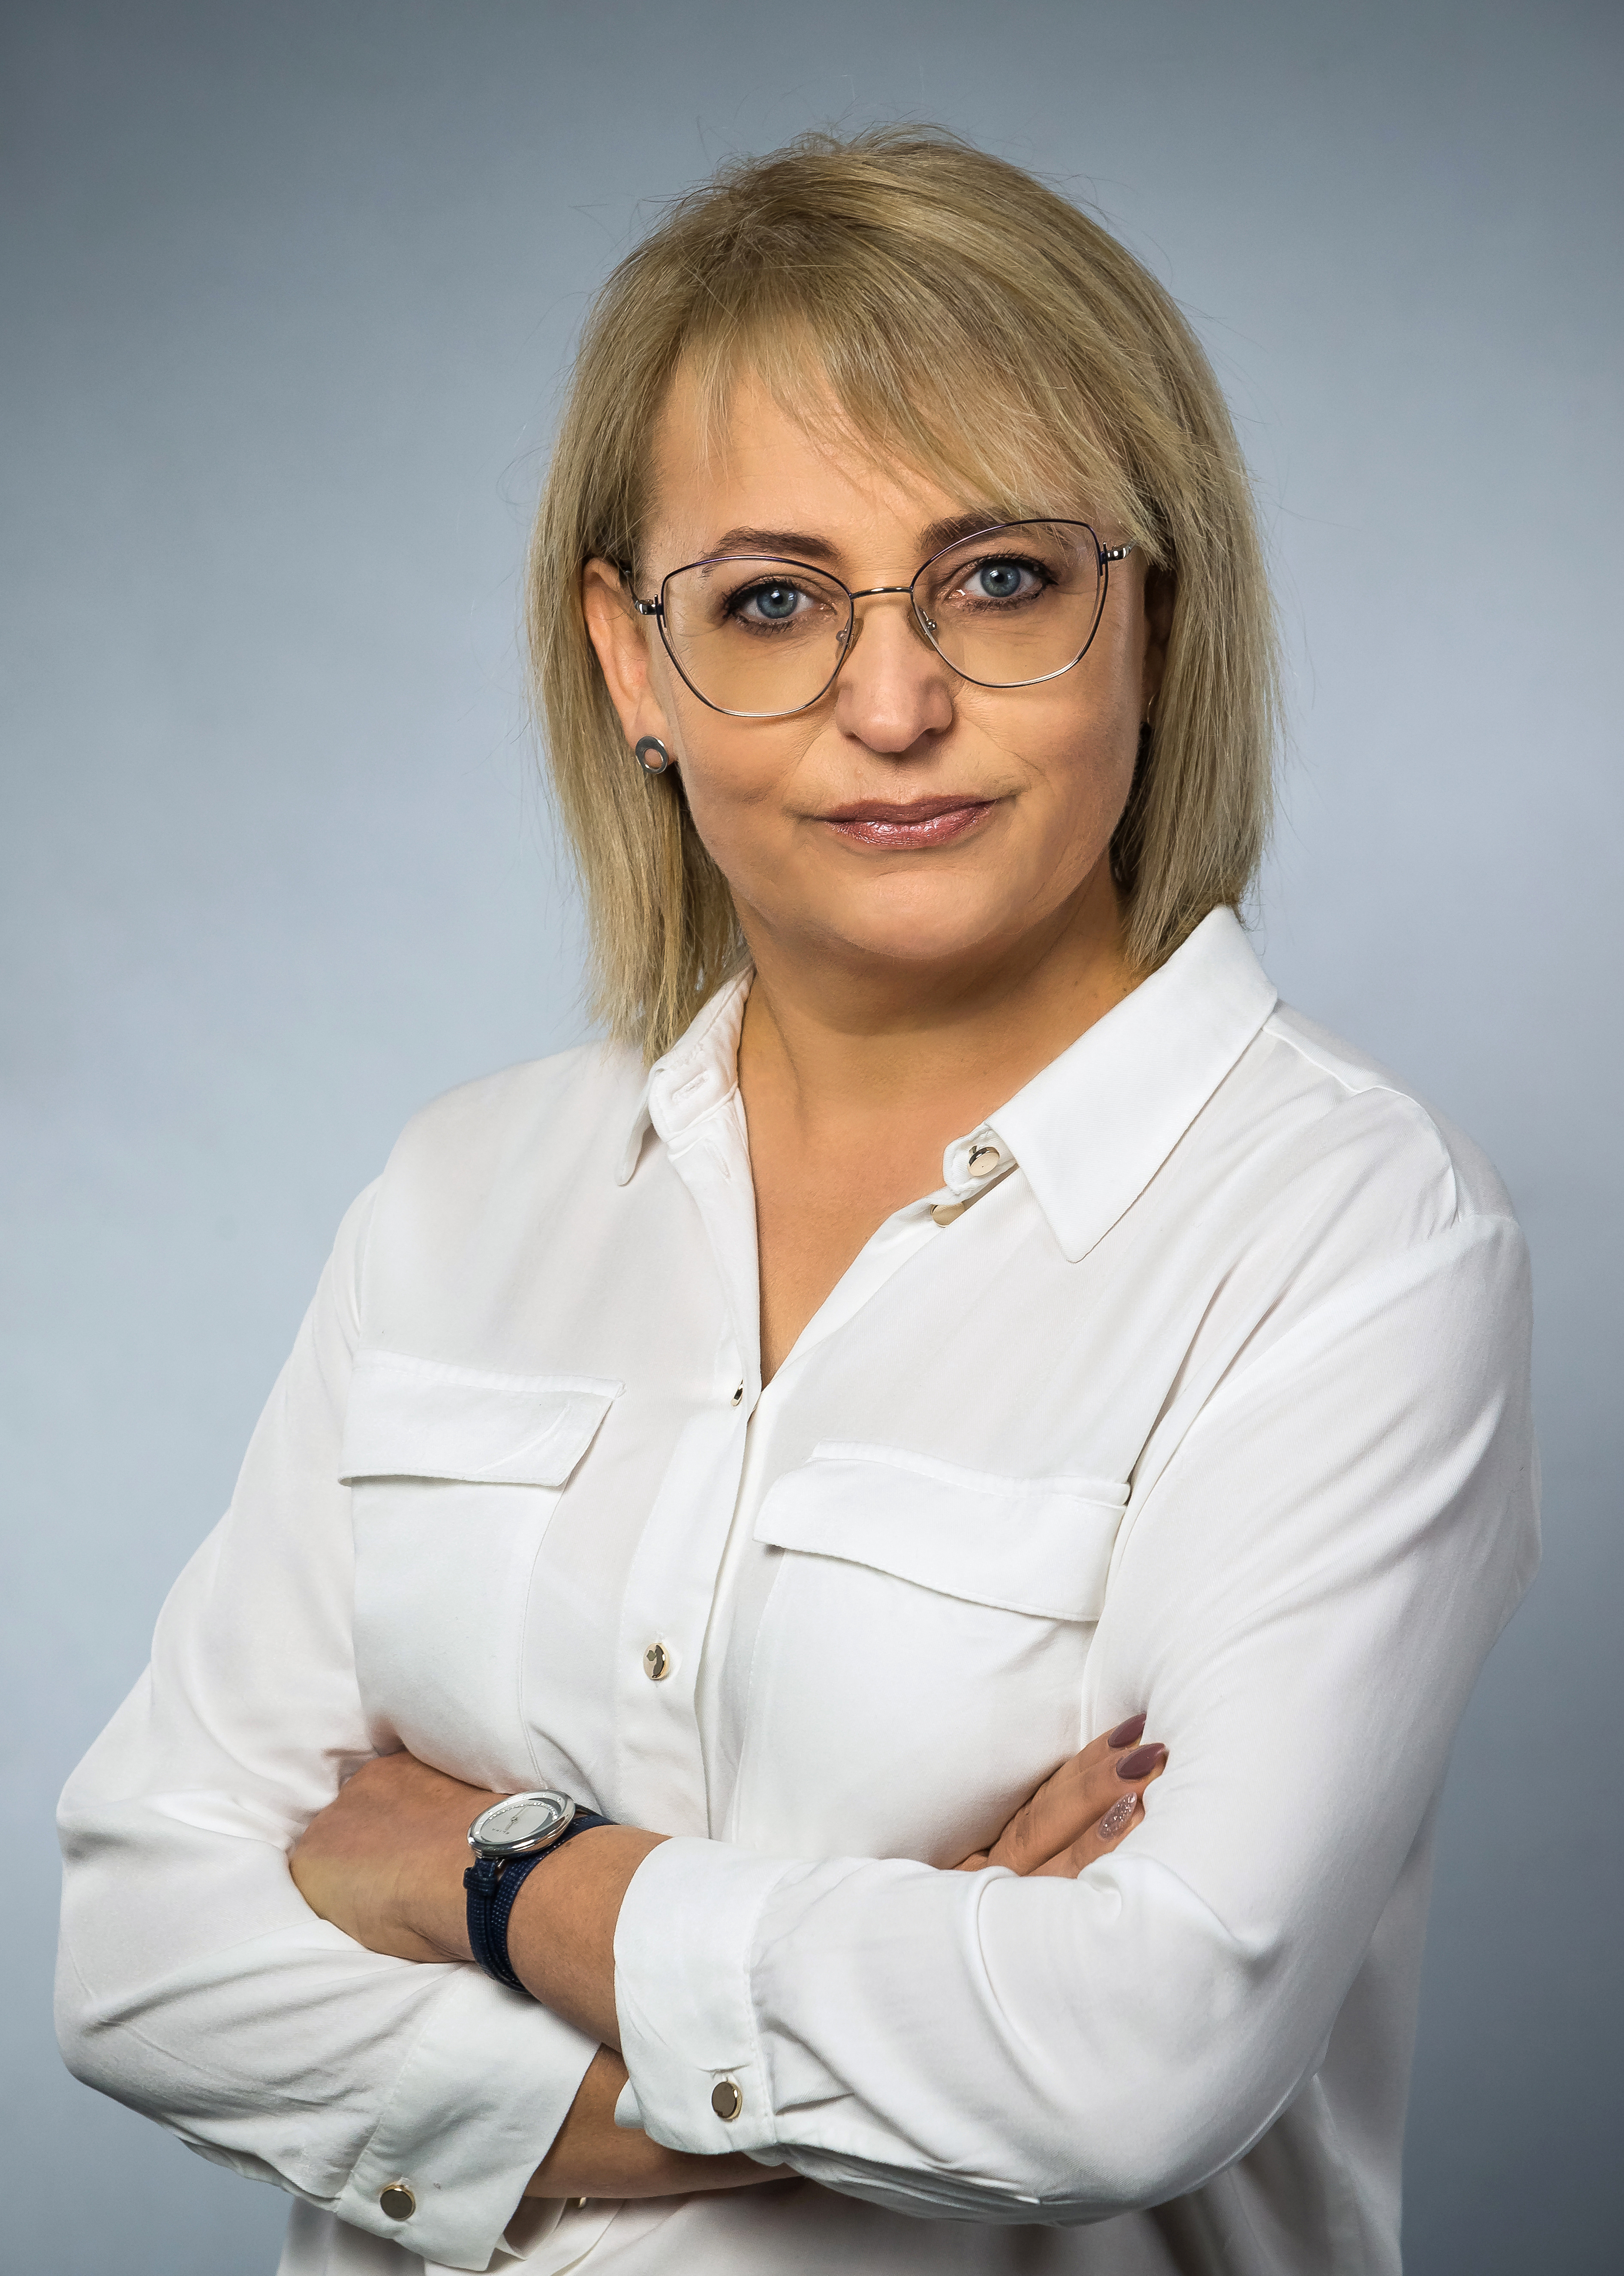 Weronika Giedrojć